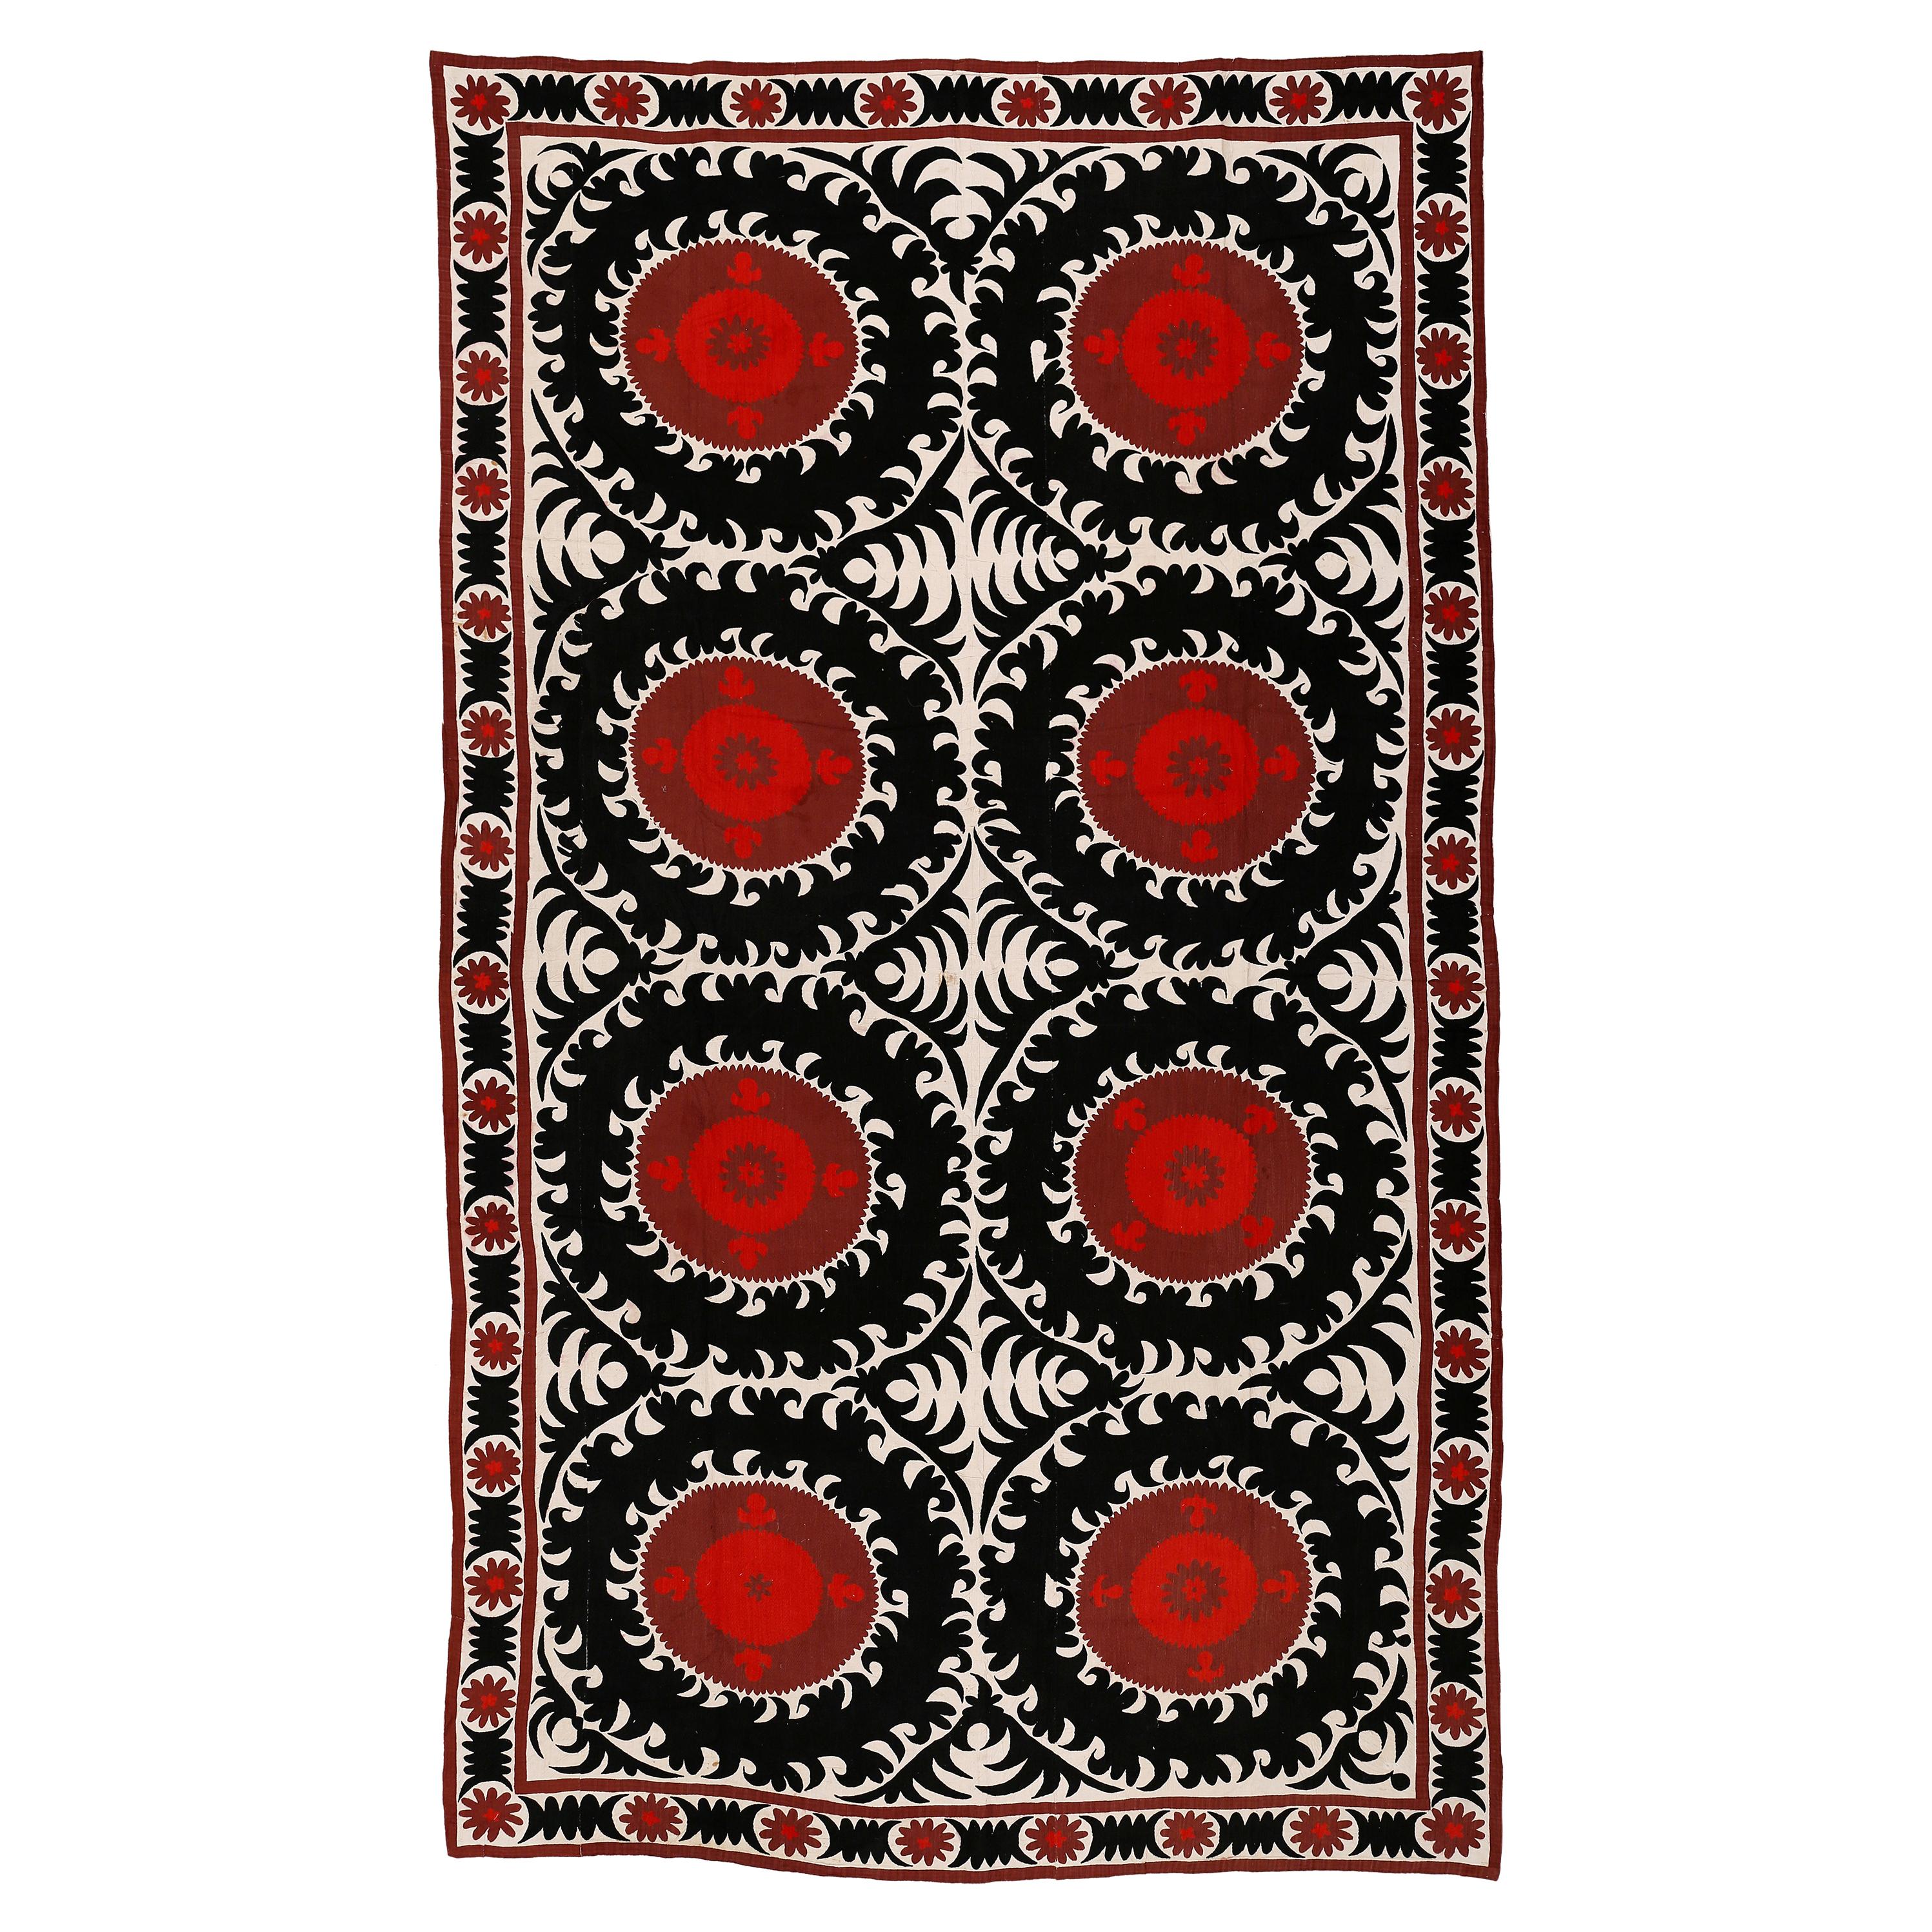 Tapis vintage surdimensionné en soie brodée Suzani d'Asie centrale